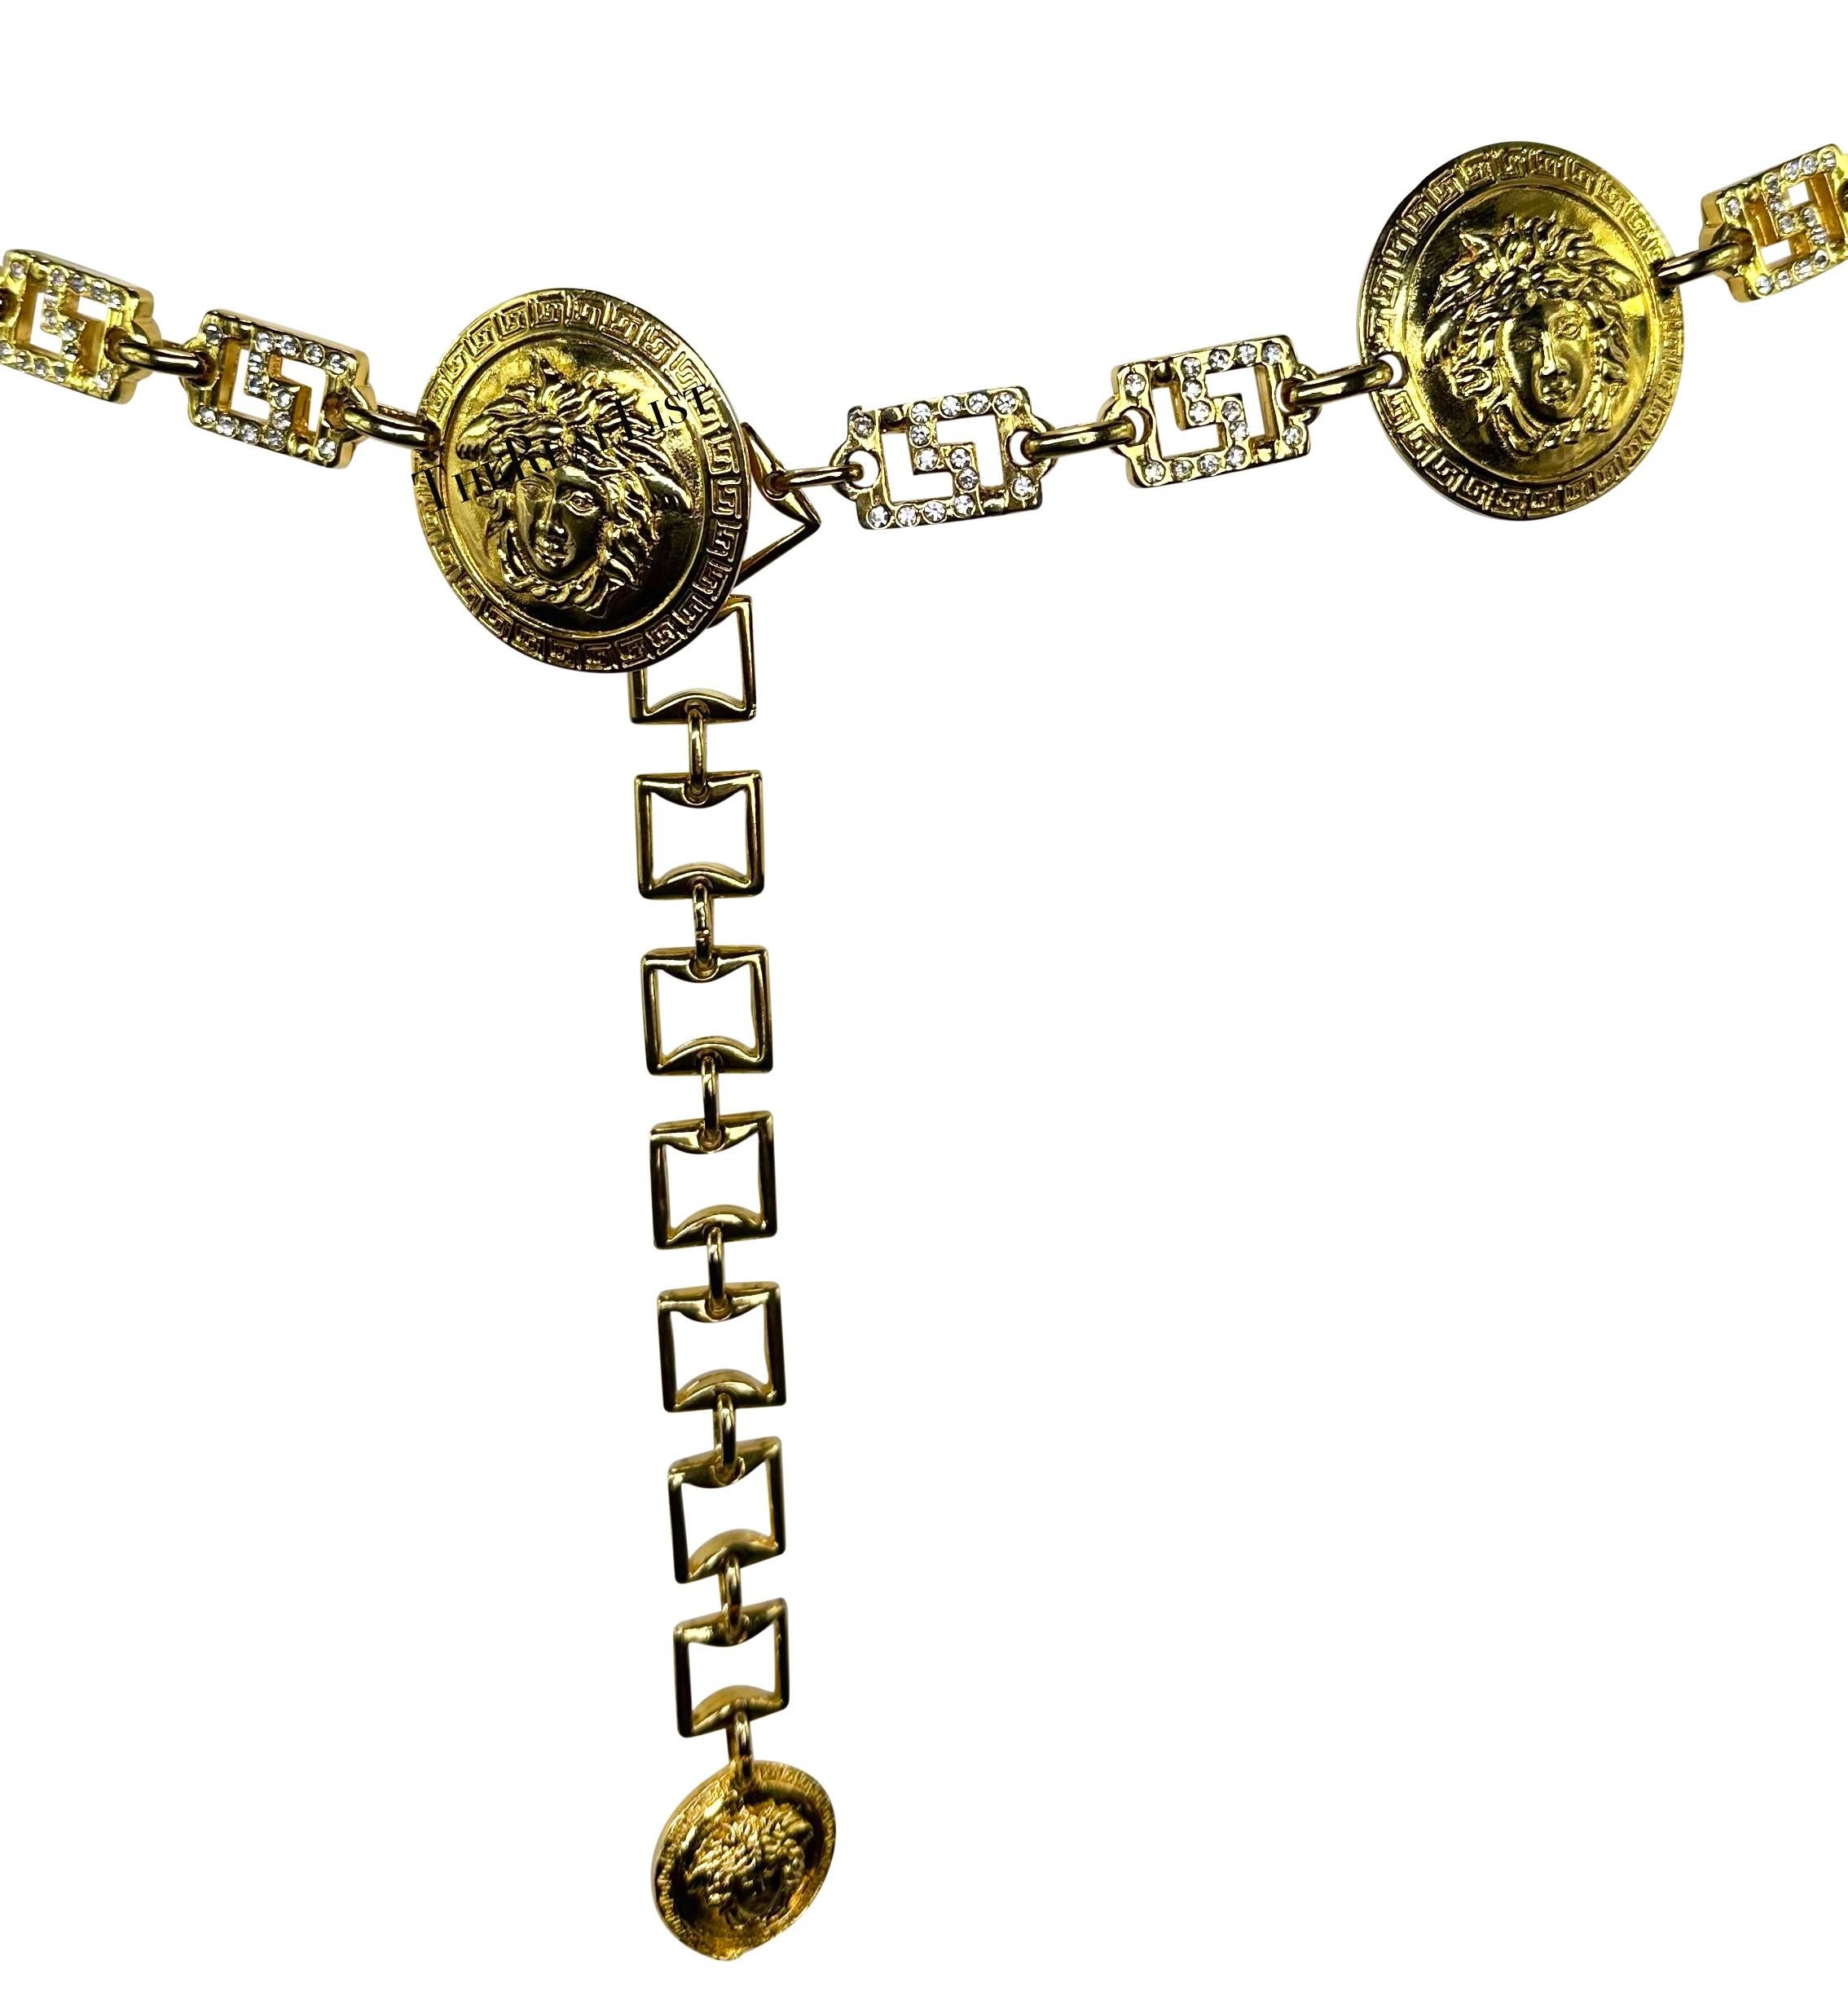 Nous vous présentons une incroyable ceinture à chaîne en or de Gianni Versace, conçue par Gianni Versace. Datant du début des années 1990, cette ceinture incroyablement rare et chic présente des maillons en forme de clé grecque en métal doré,